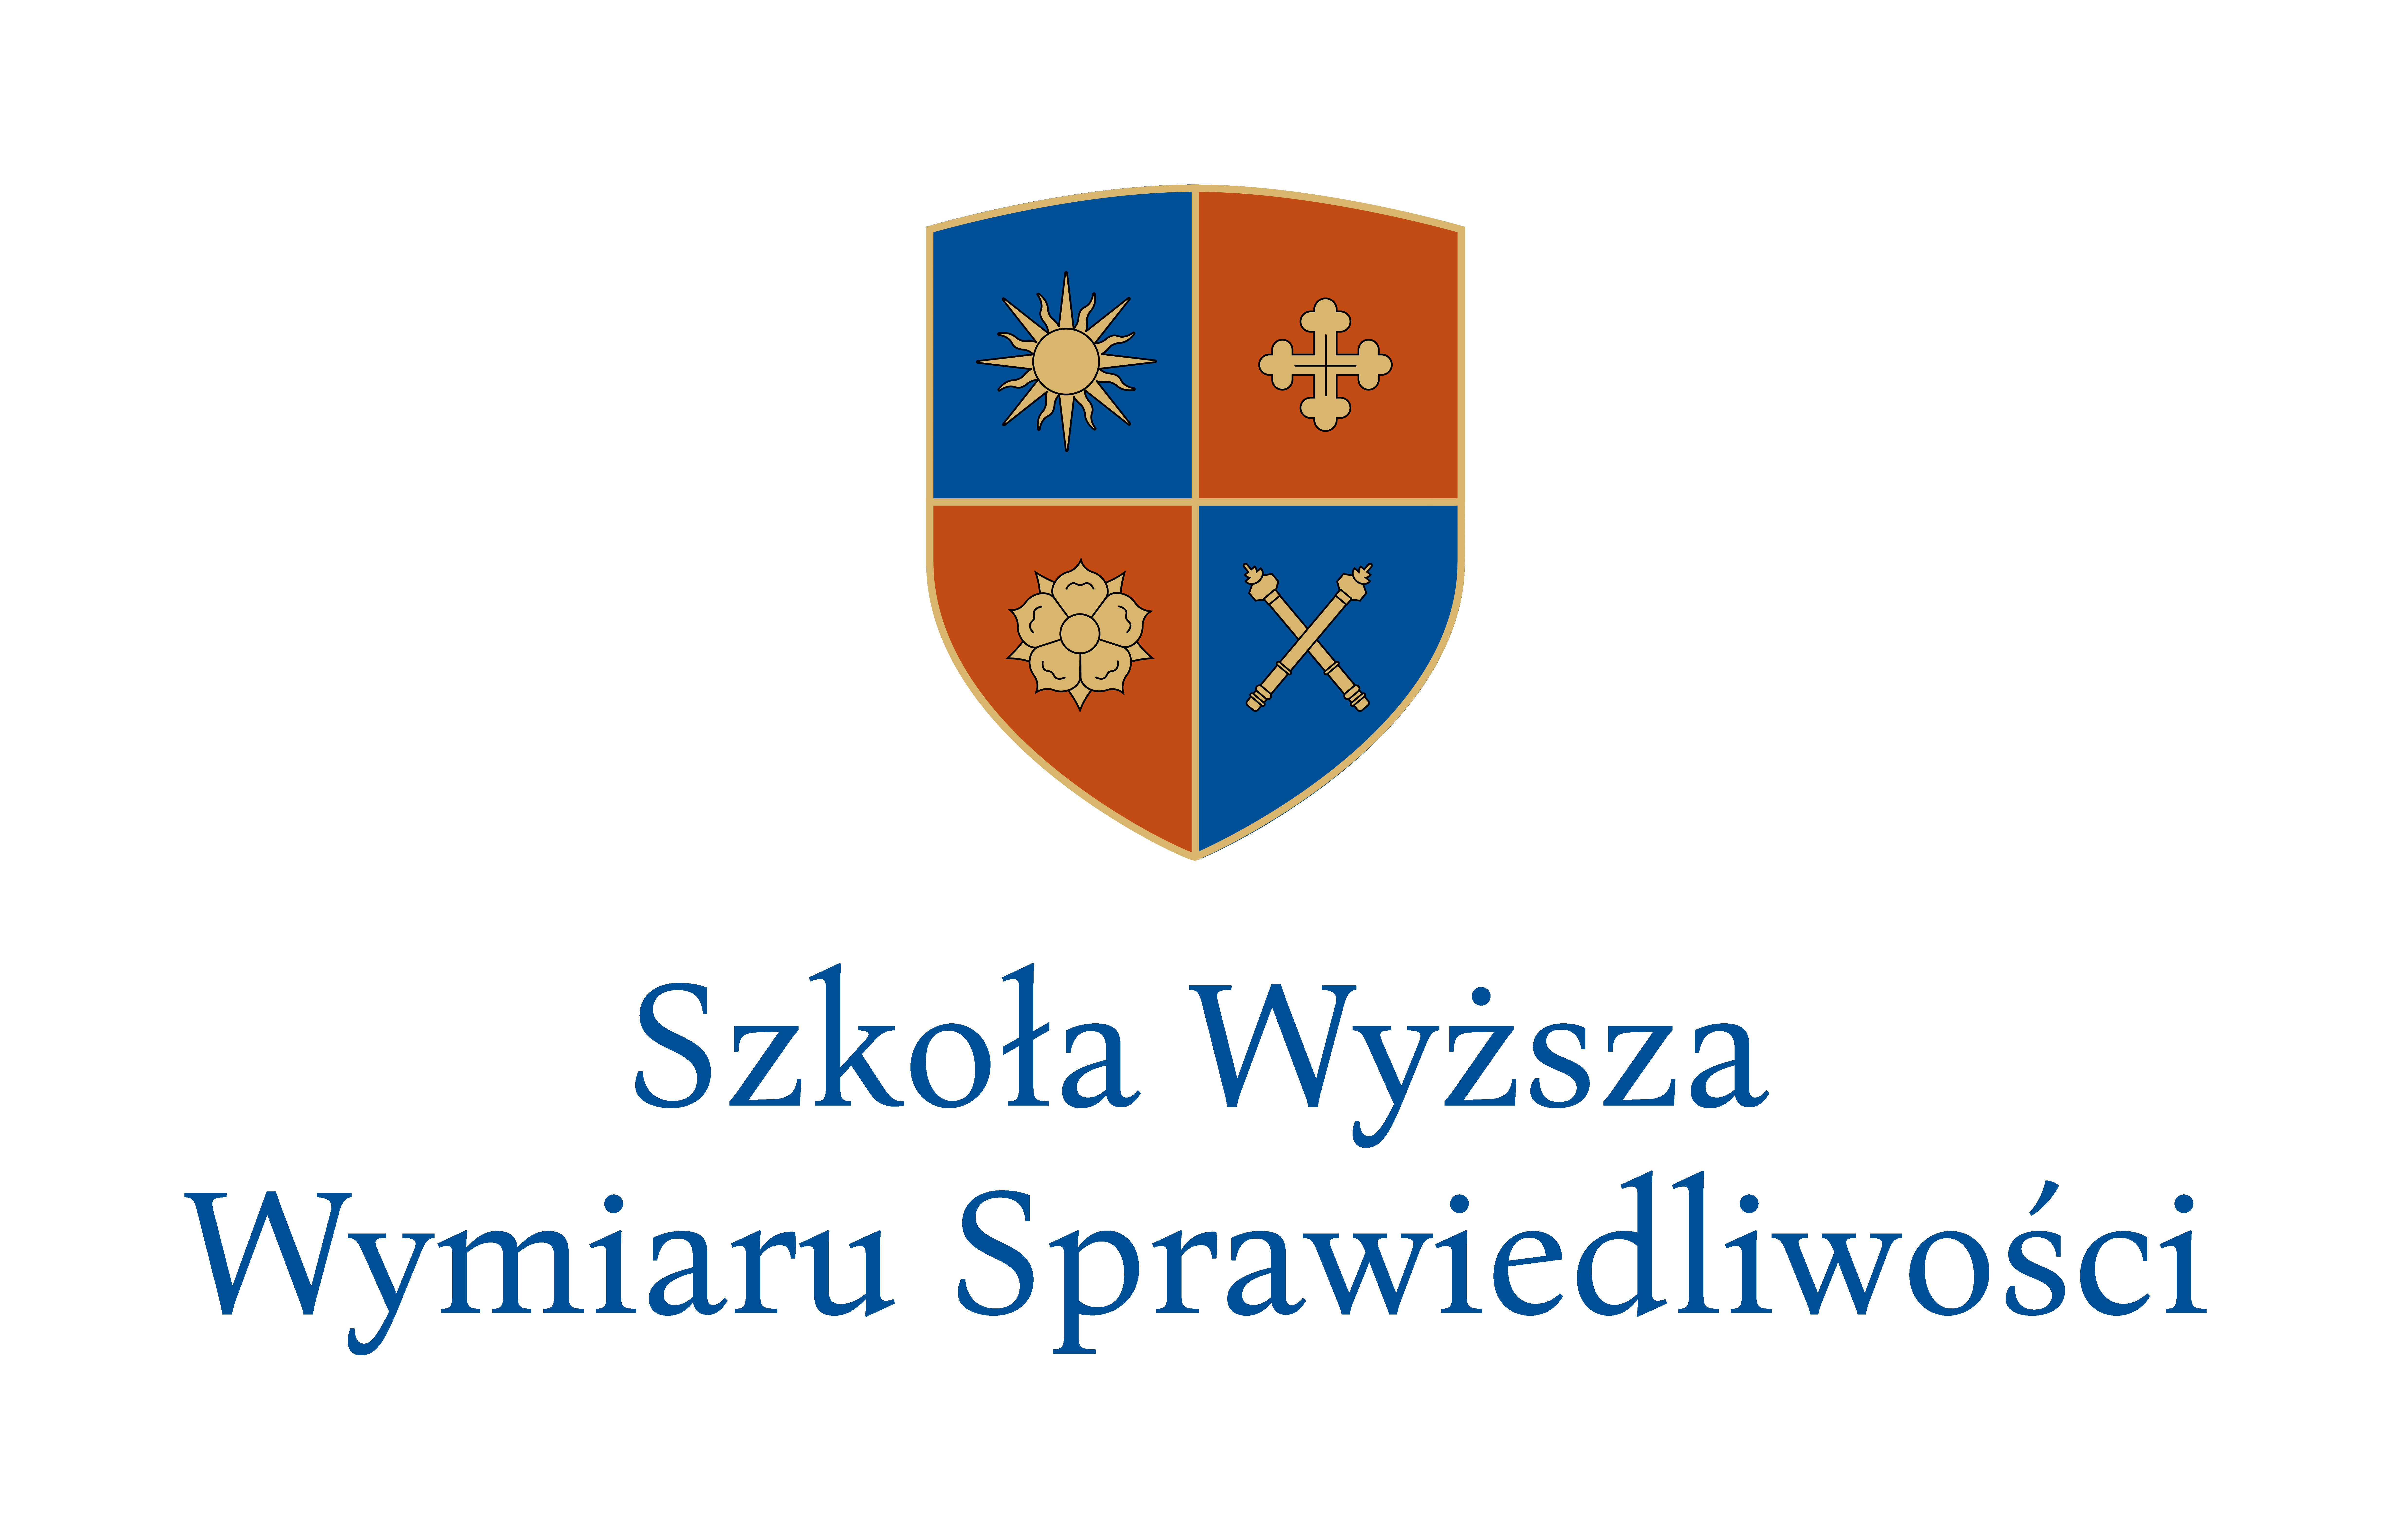 SWWS Szkoła Wyższa Wymiaru Sprawiedliwości logo